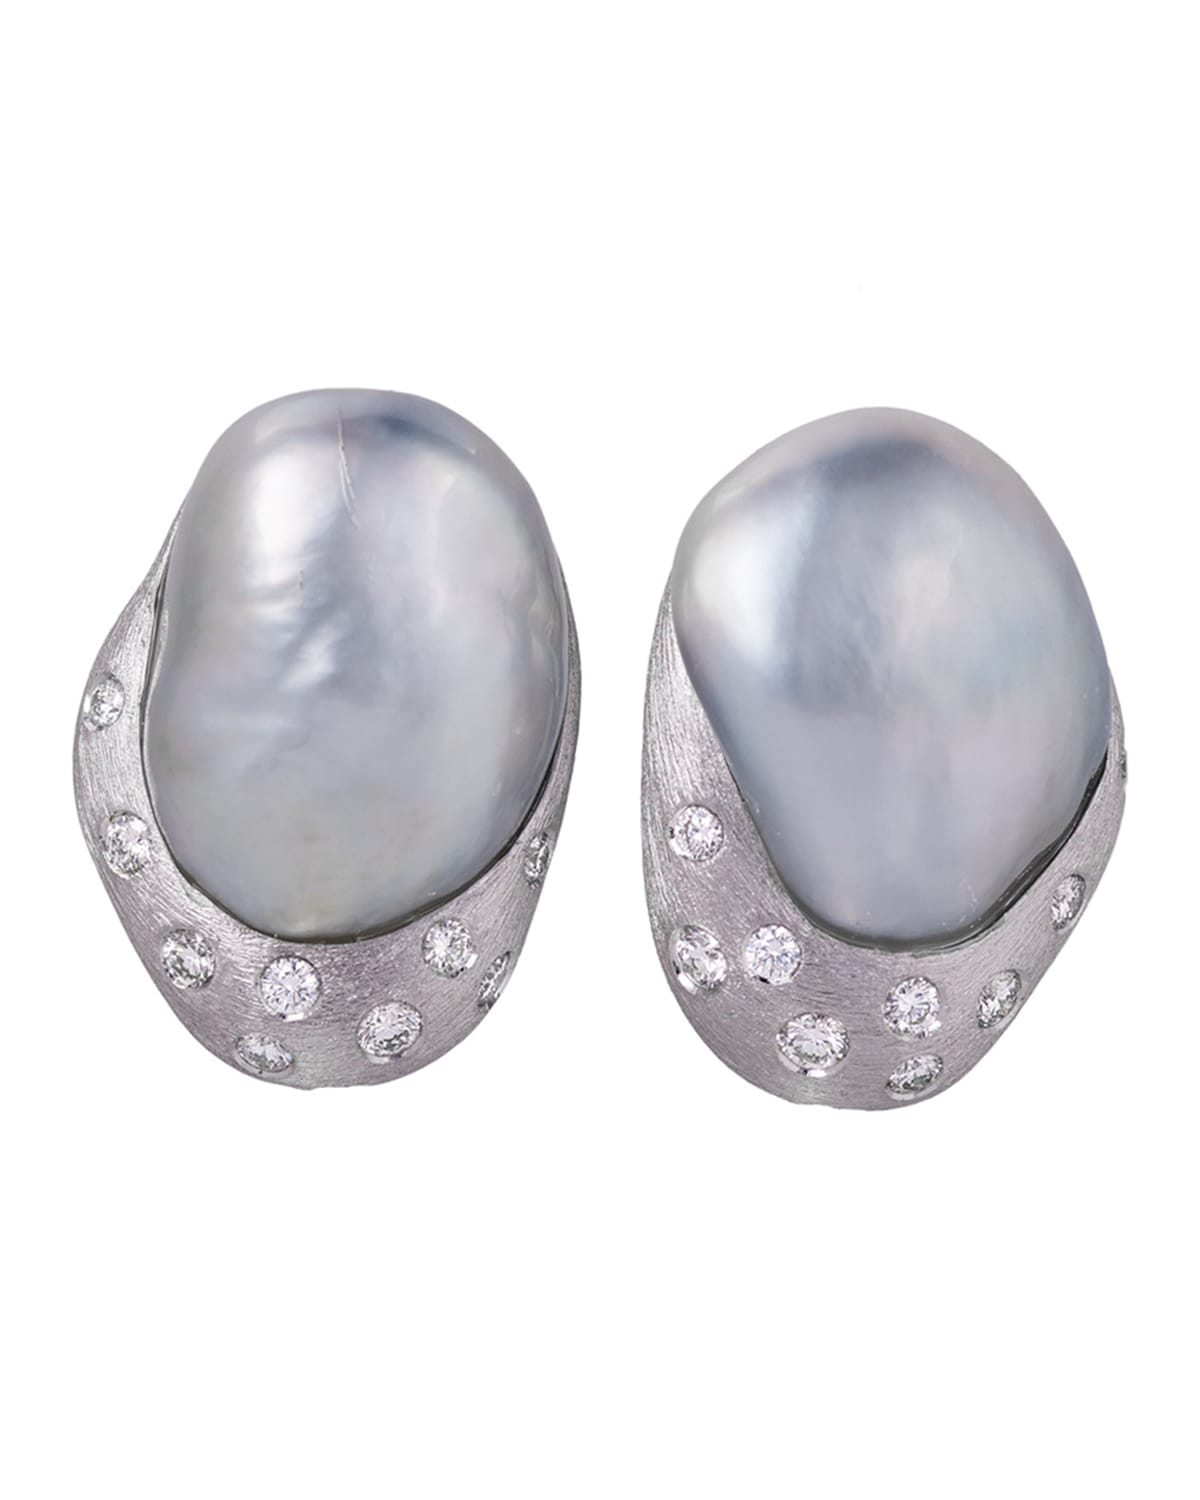 Margot McKinney Jewelry 18k Baroque Pearl & Diamond Stud Earrings